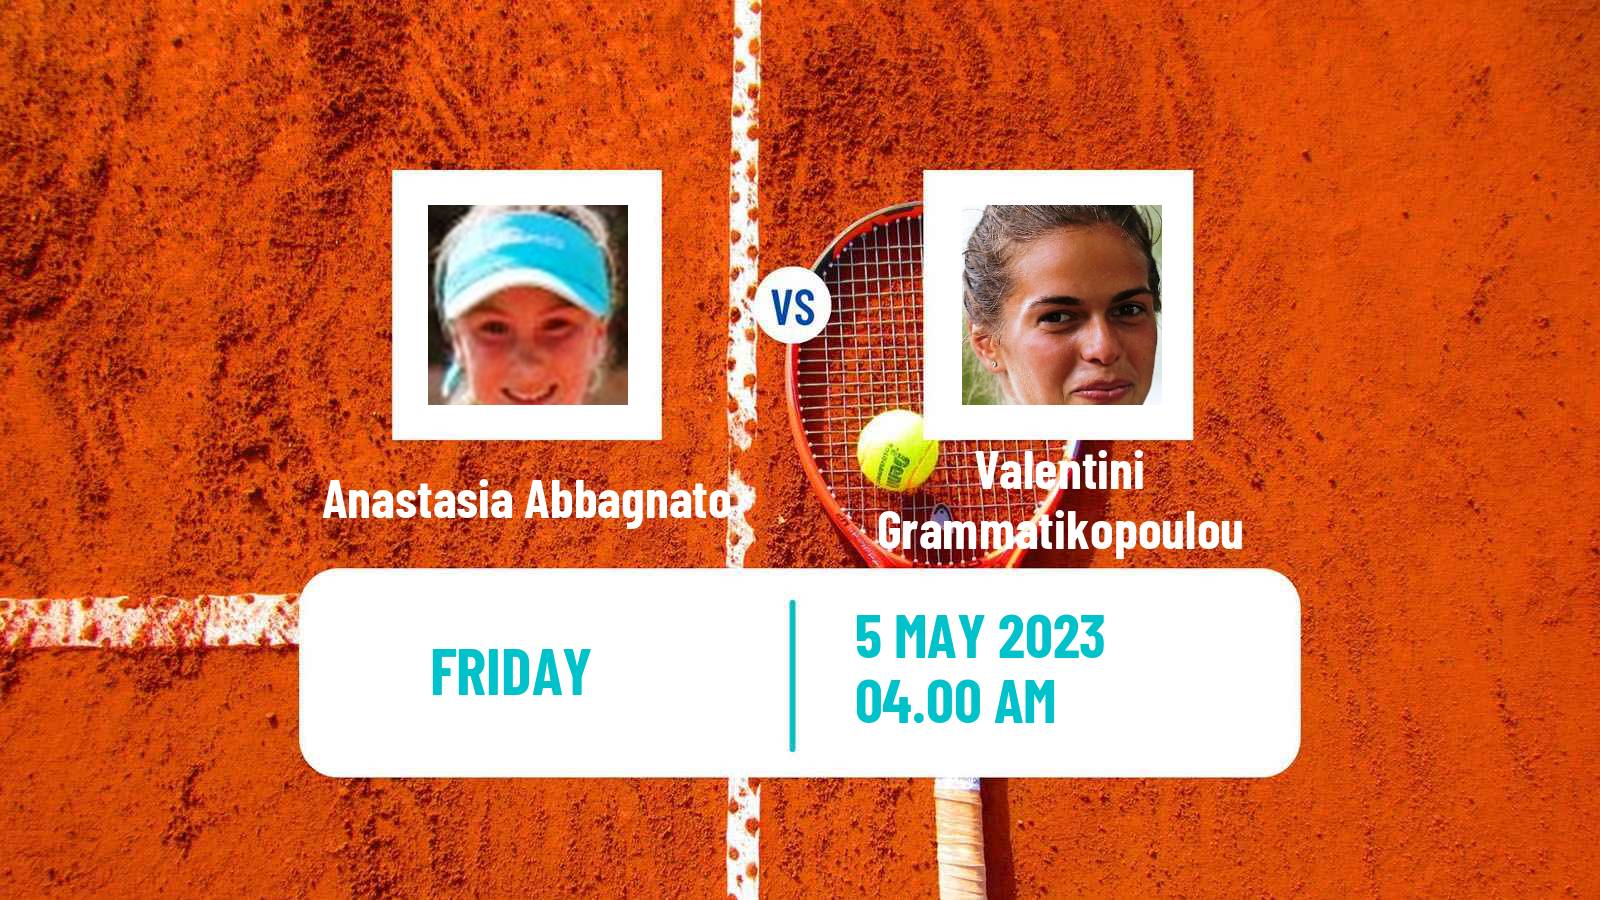 Tennis ITF Tournaments Anastasia Abbagnato - Valentini Grammatikopoulou